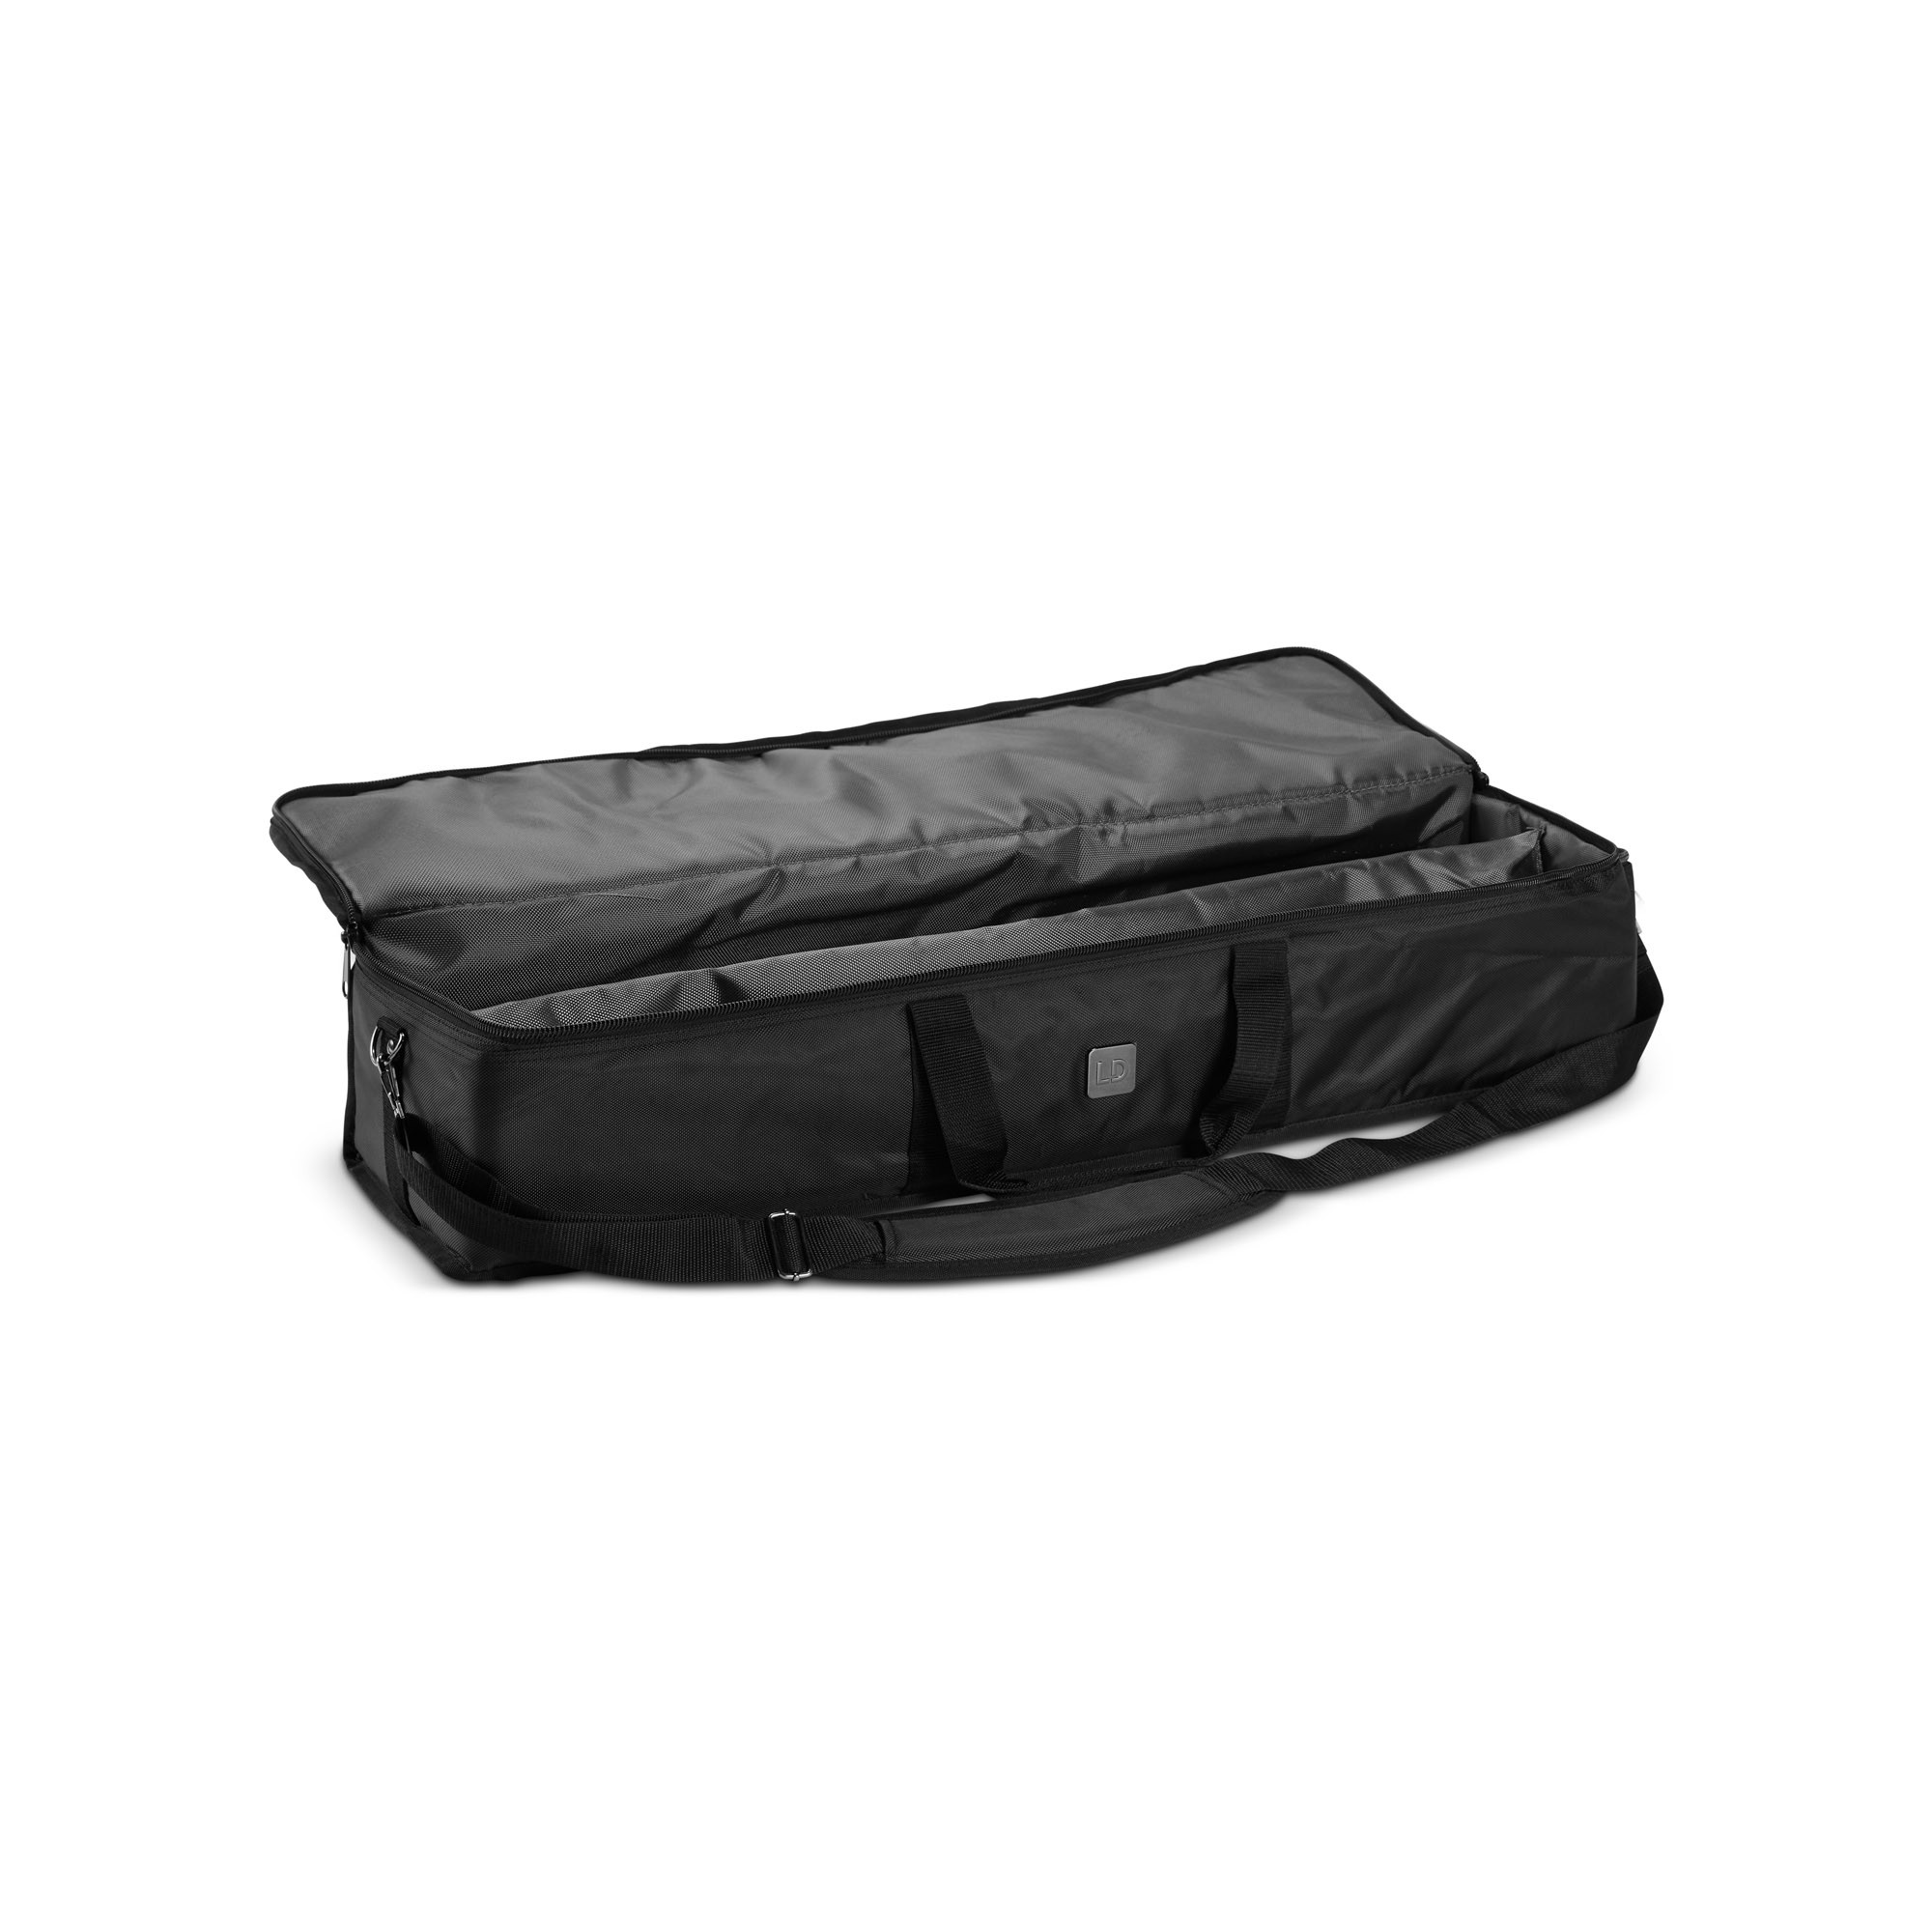 Ld Systems Maui 28 G3 Sat Bag - Tasche für Lautsprecher & Subwoofer - Variation 2